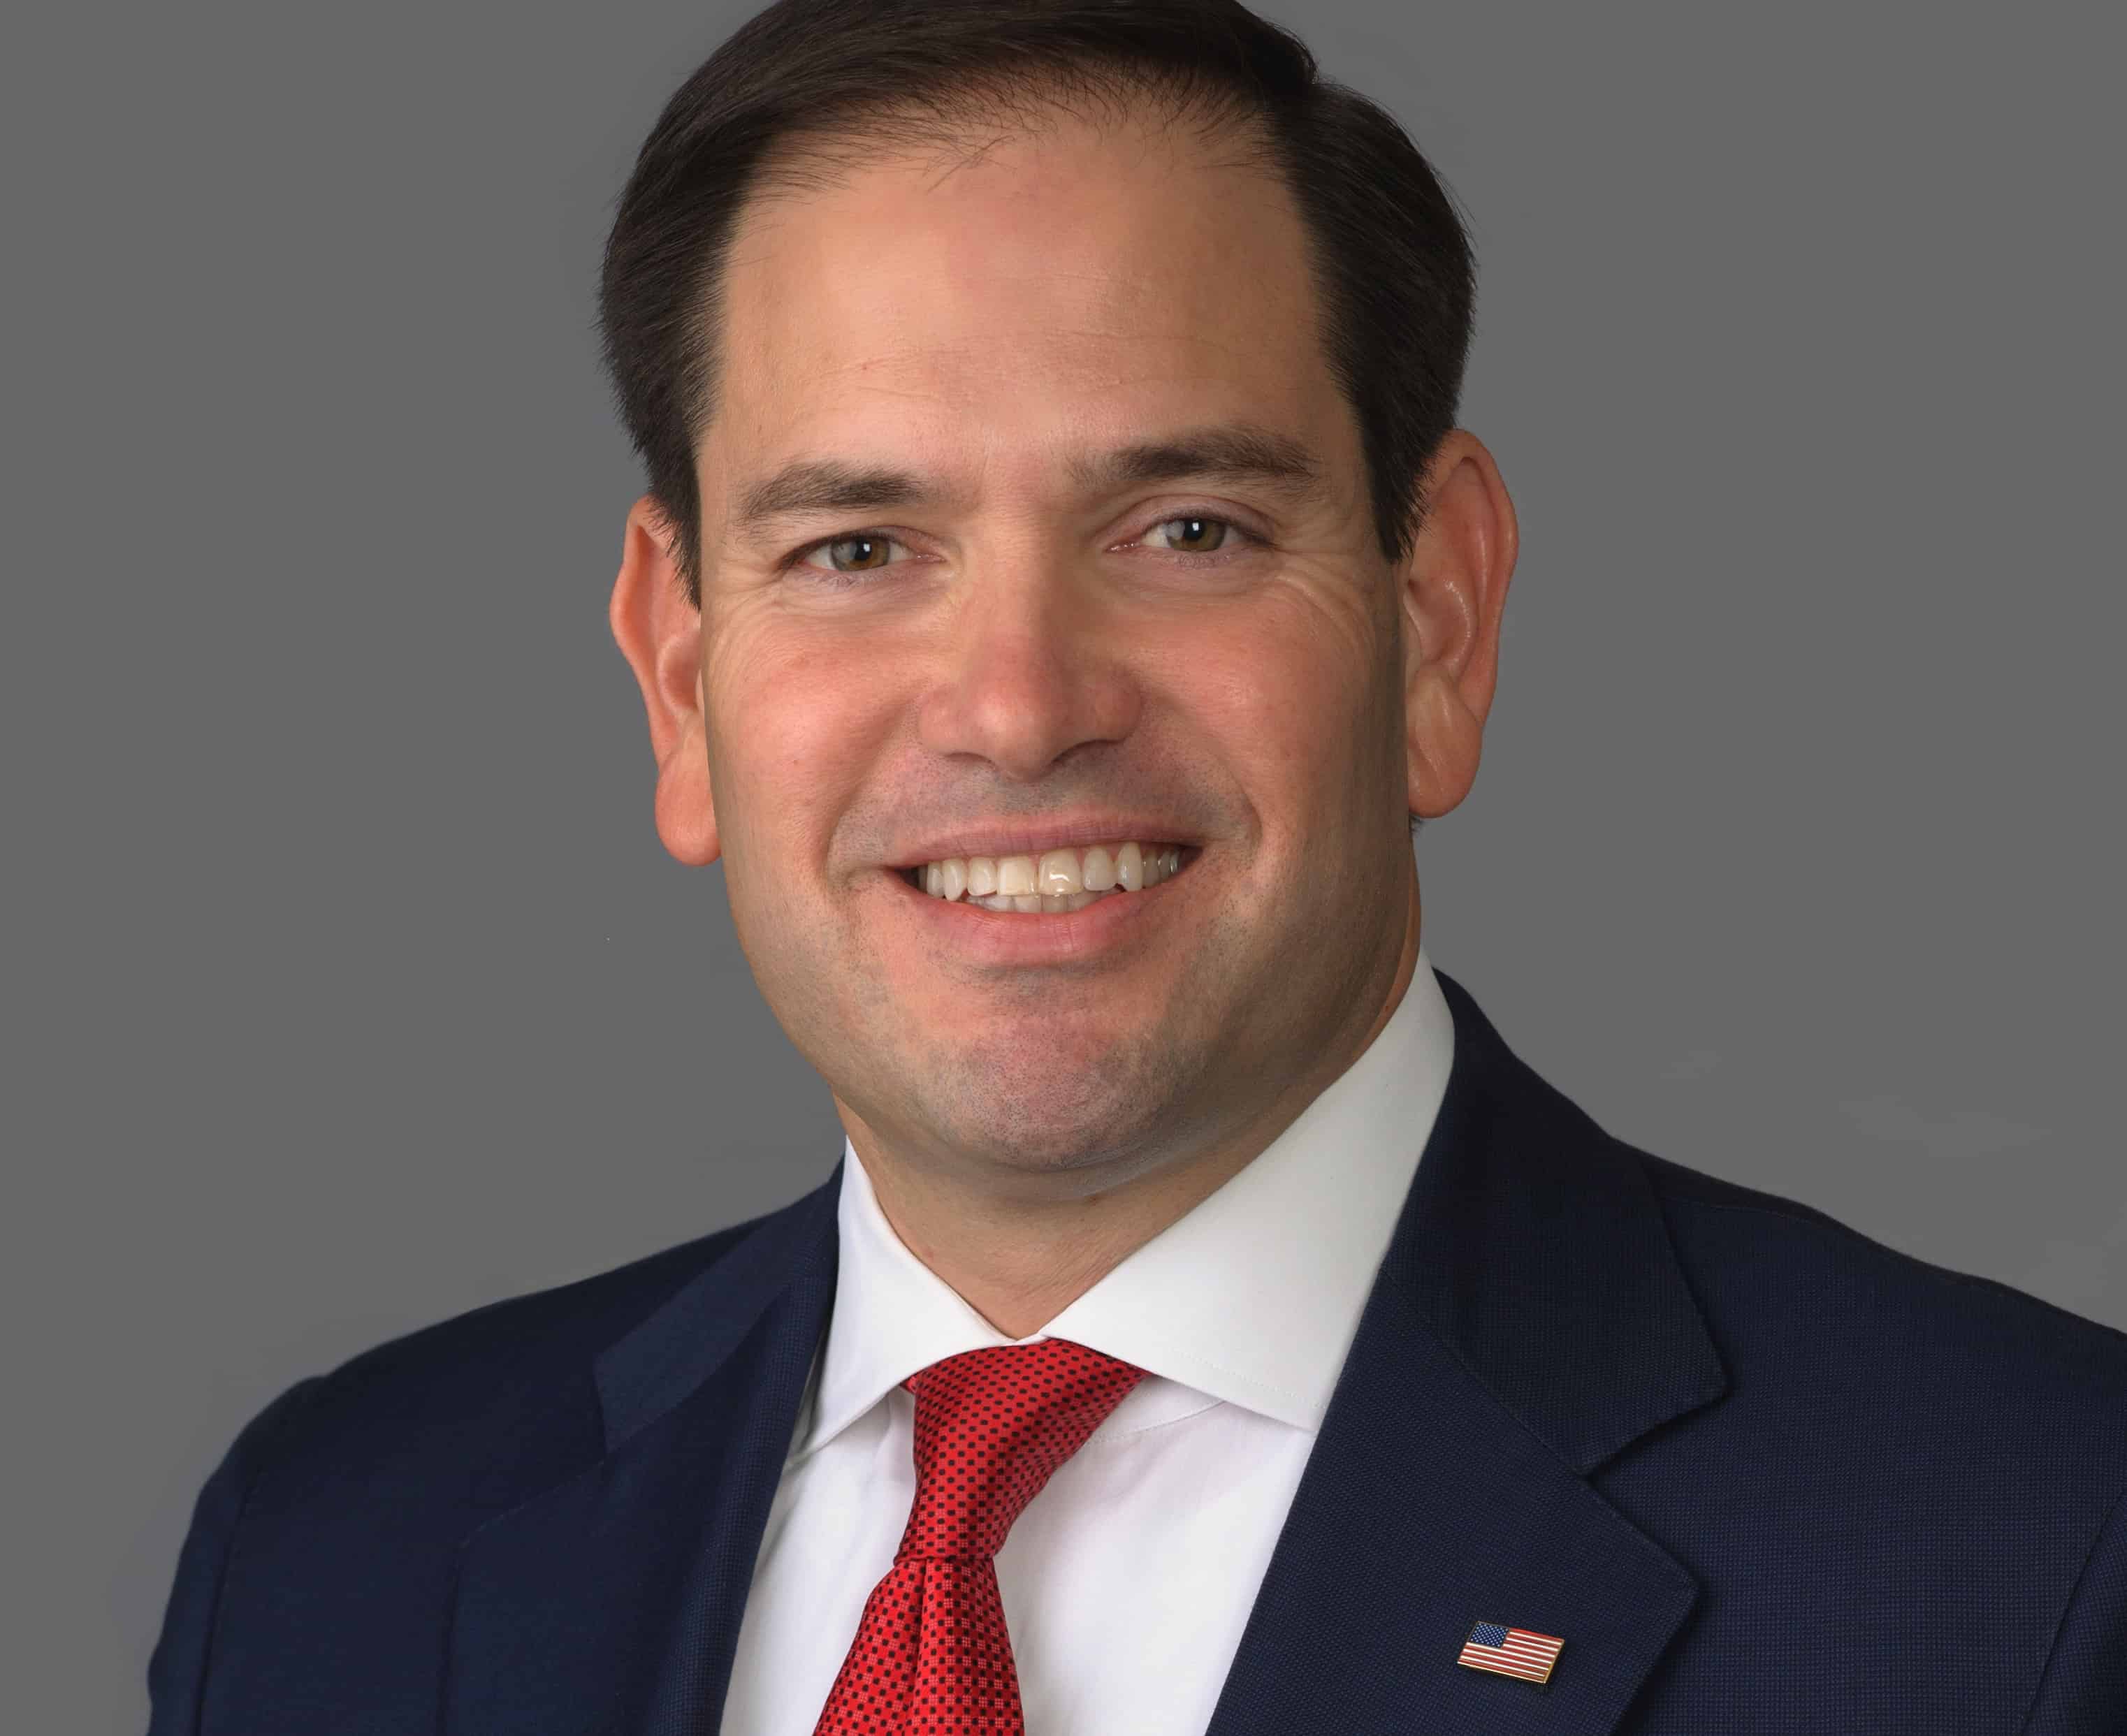 Senator Rubio